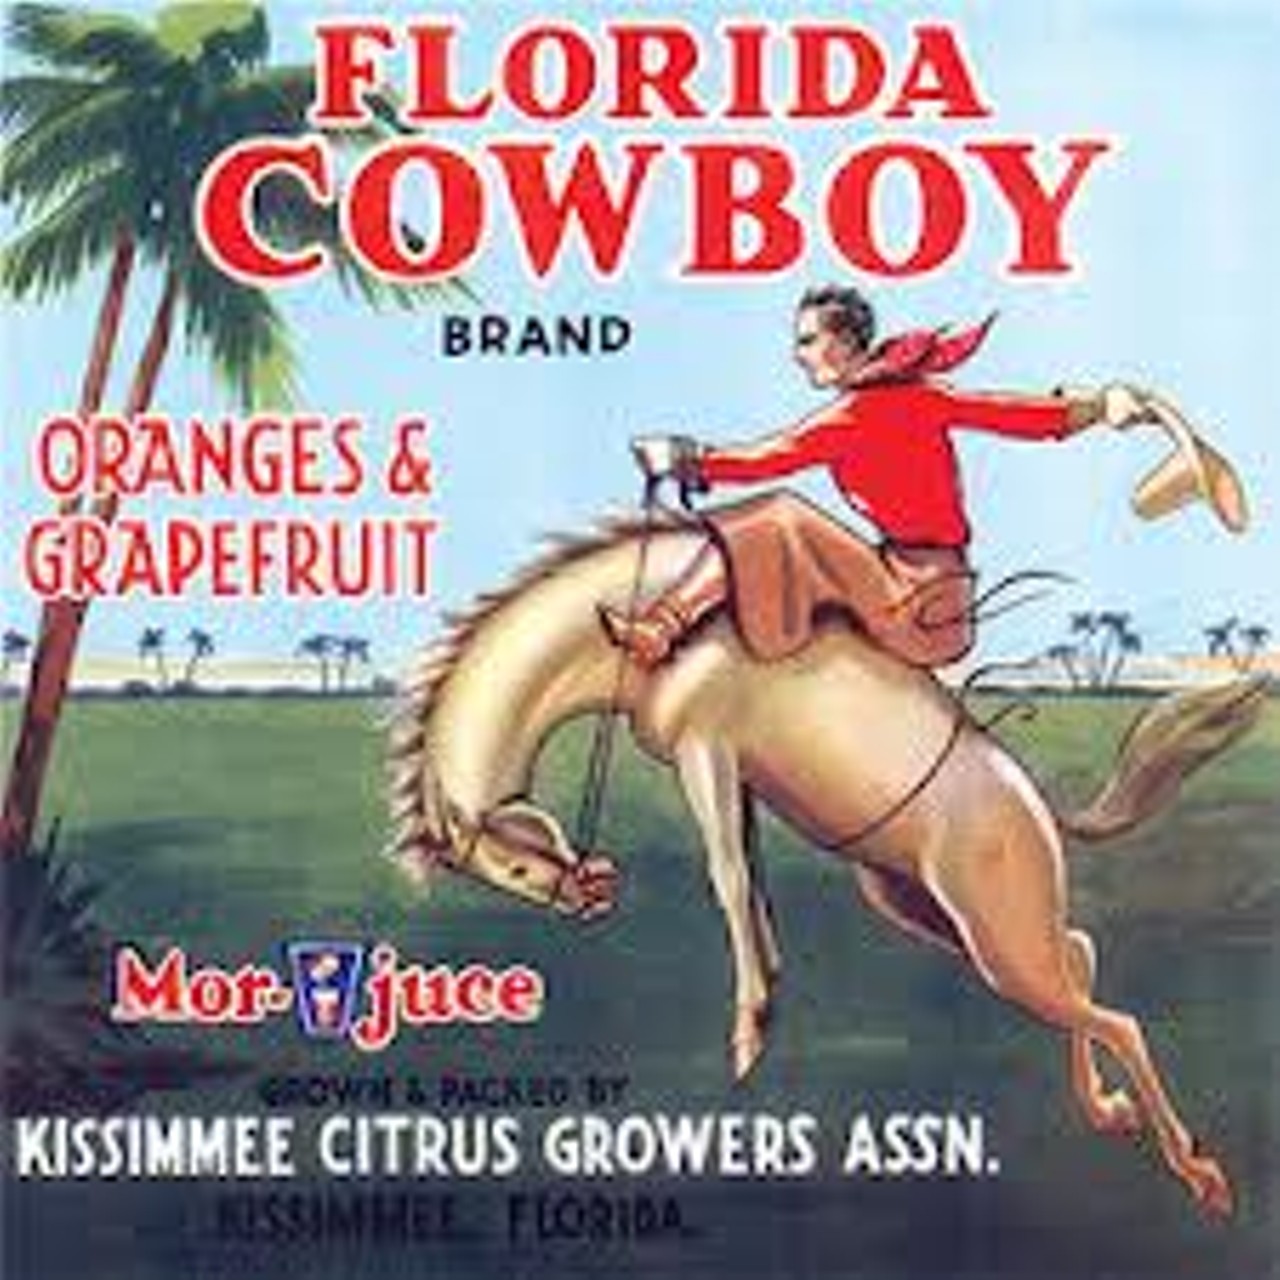 Florida Cowboy of kissimmee, via ebay.com